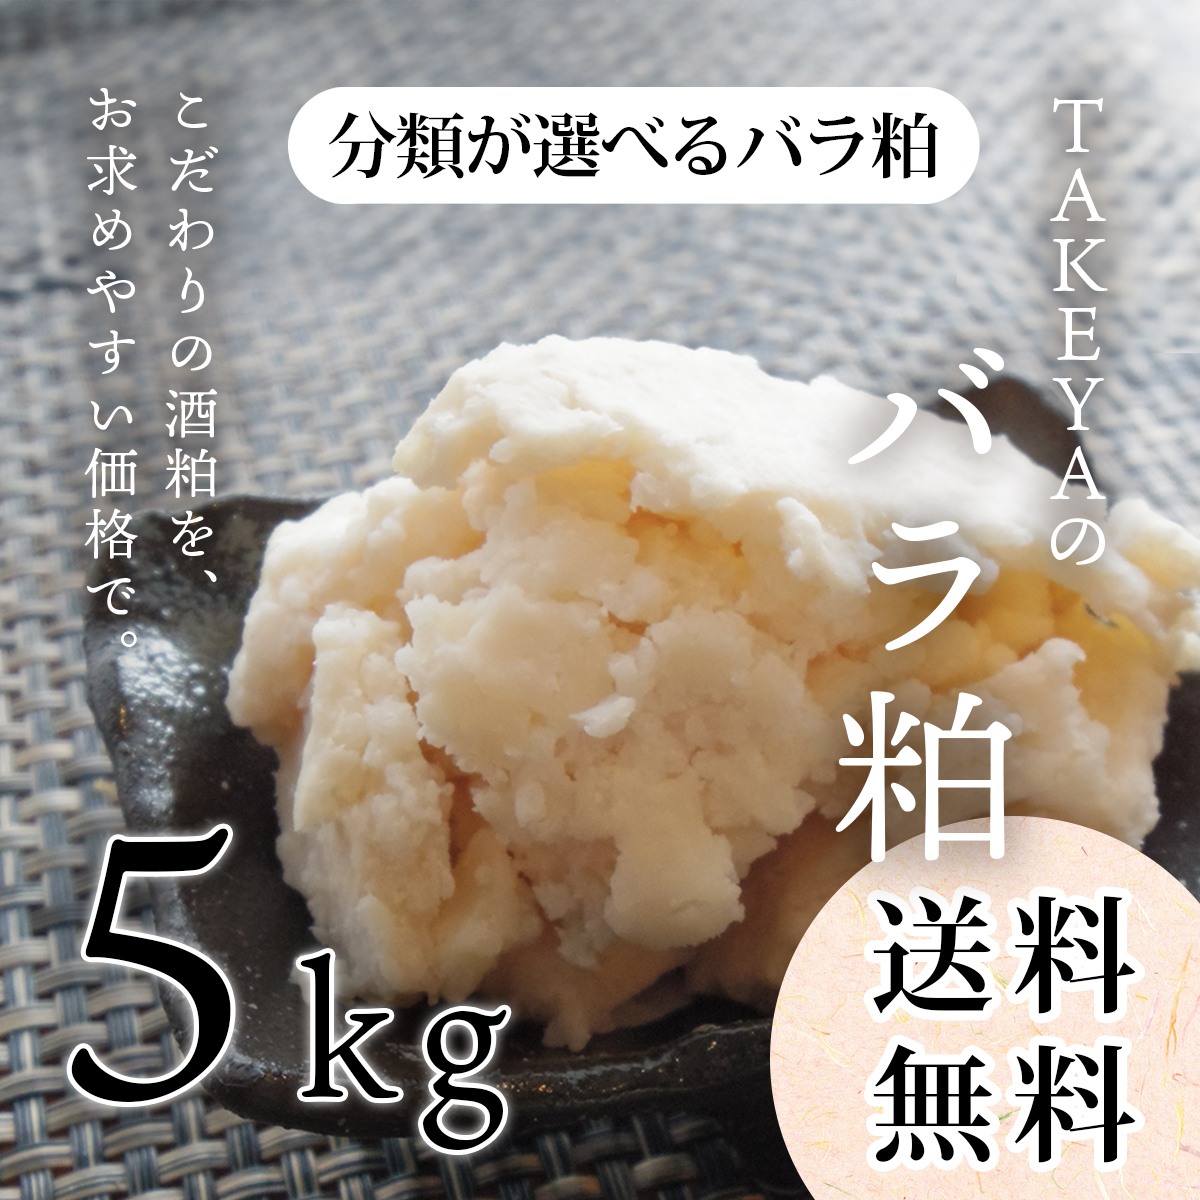 TAKEYAの分類が選べるバラ粕 (極上純米大吟醸から純米まで) 5kg